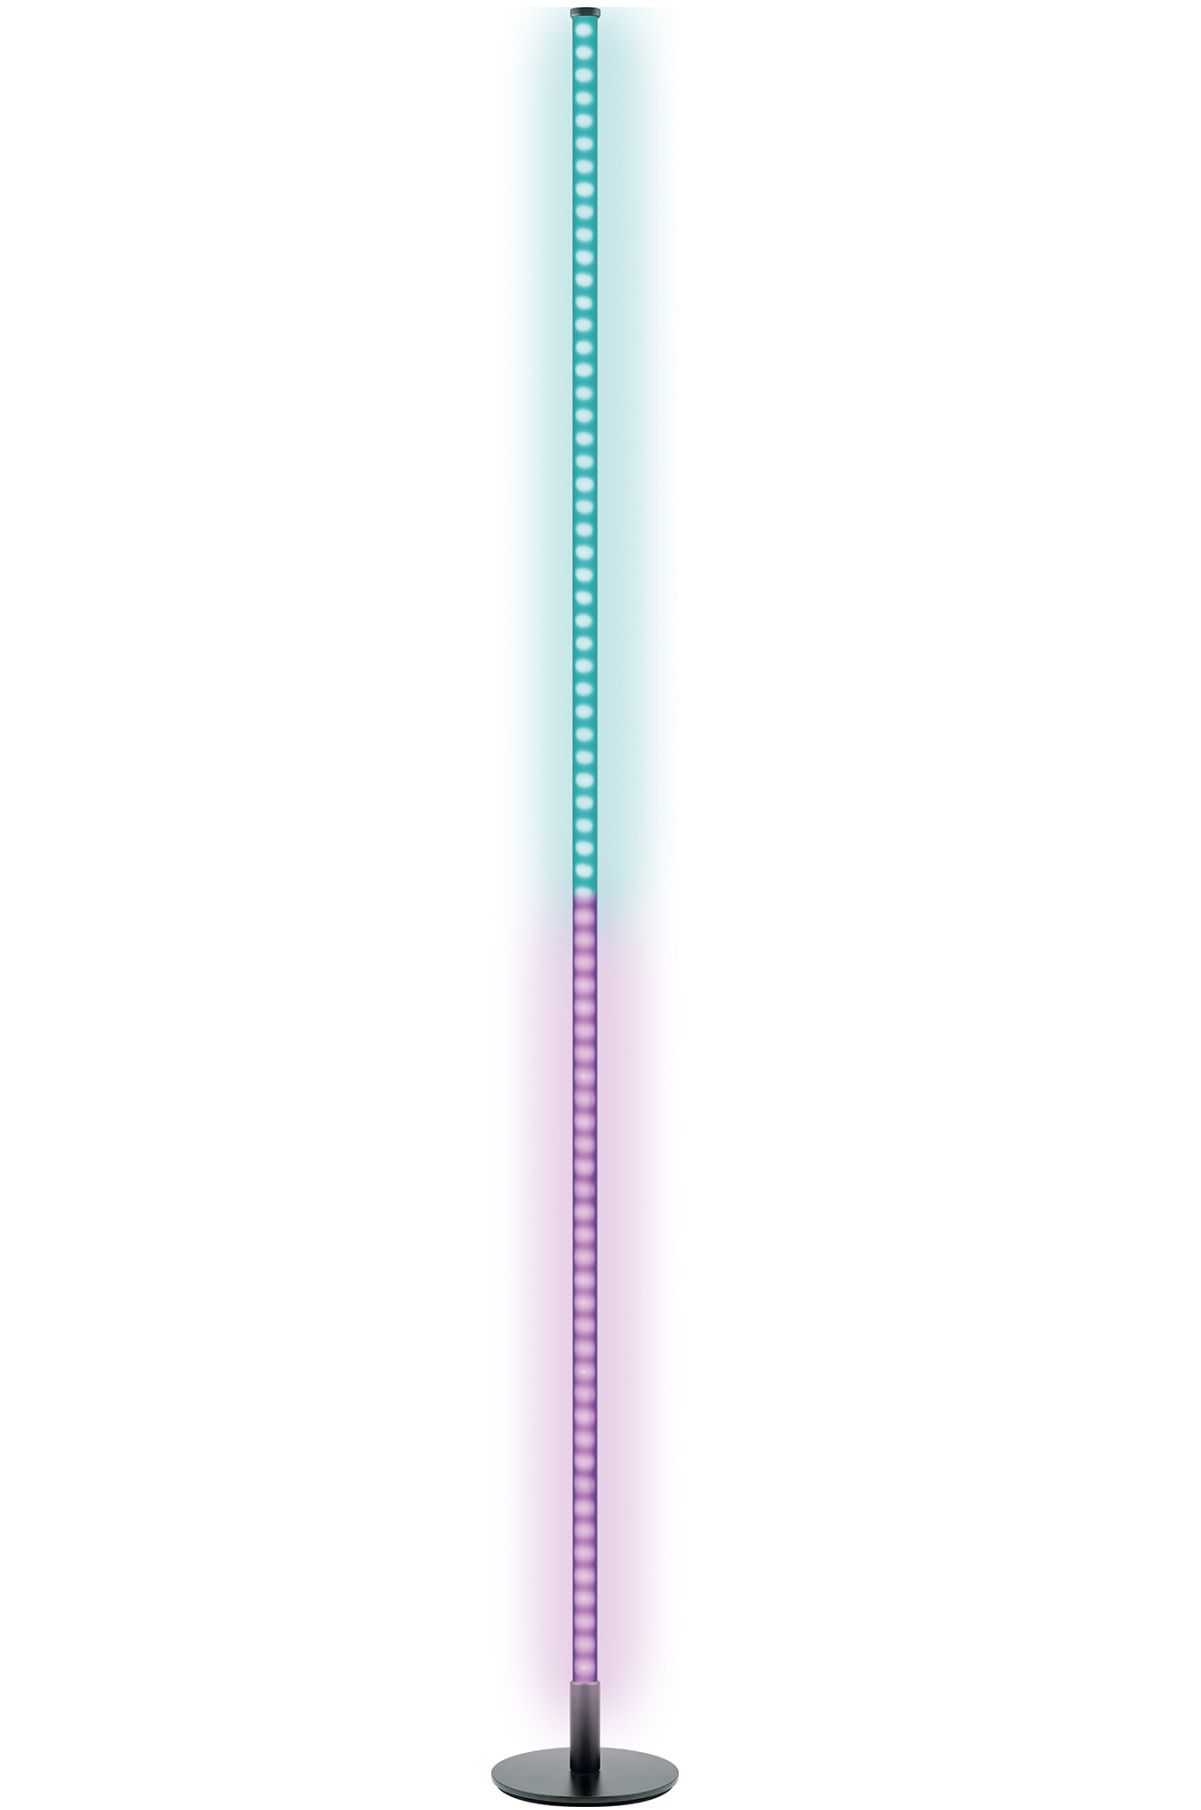 SCHWAIGER -STL358 Fernbedienung mit Gelb, inkl. Blau, Grün, etc. Pink, dimmbar, Farbwechseleffekt, Stehleuchte 013- Orange